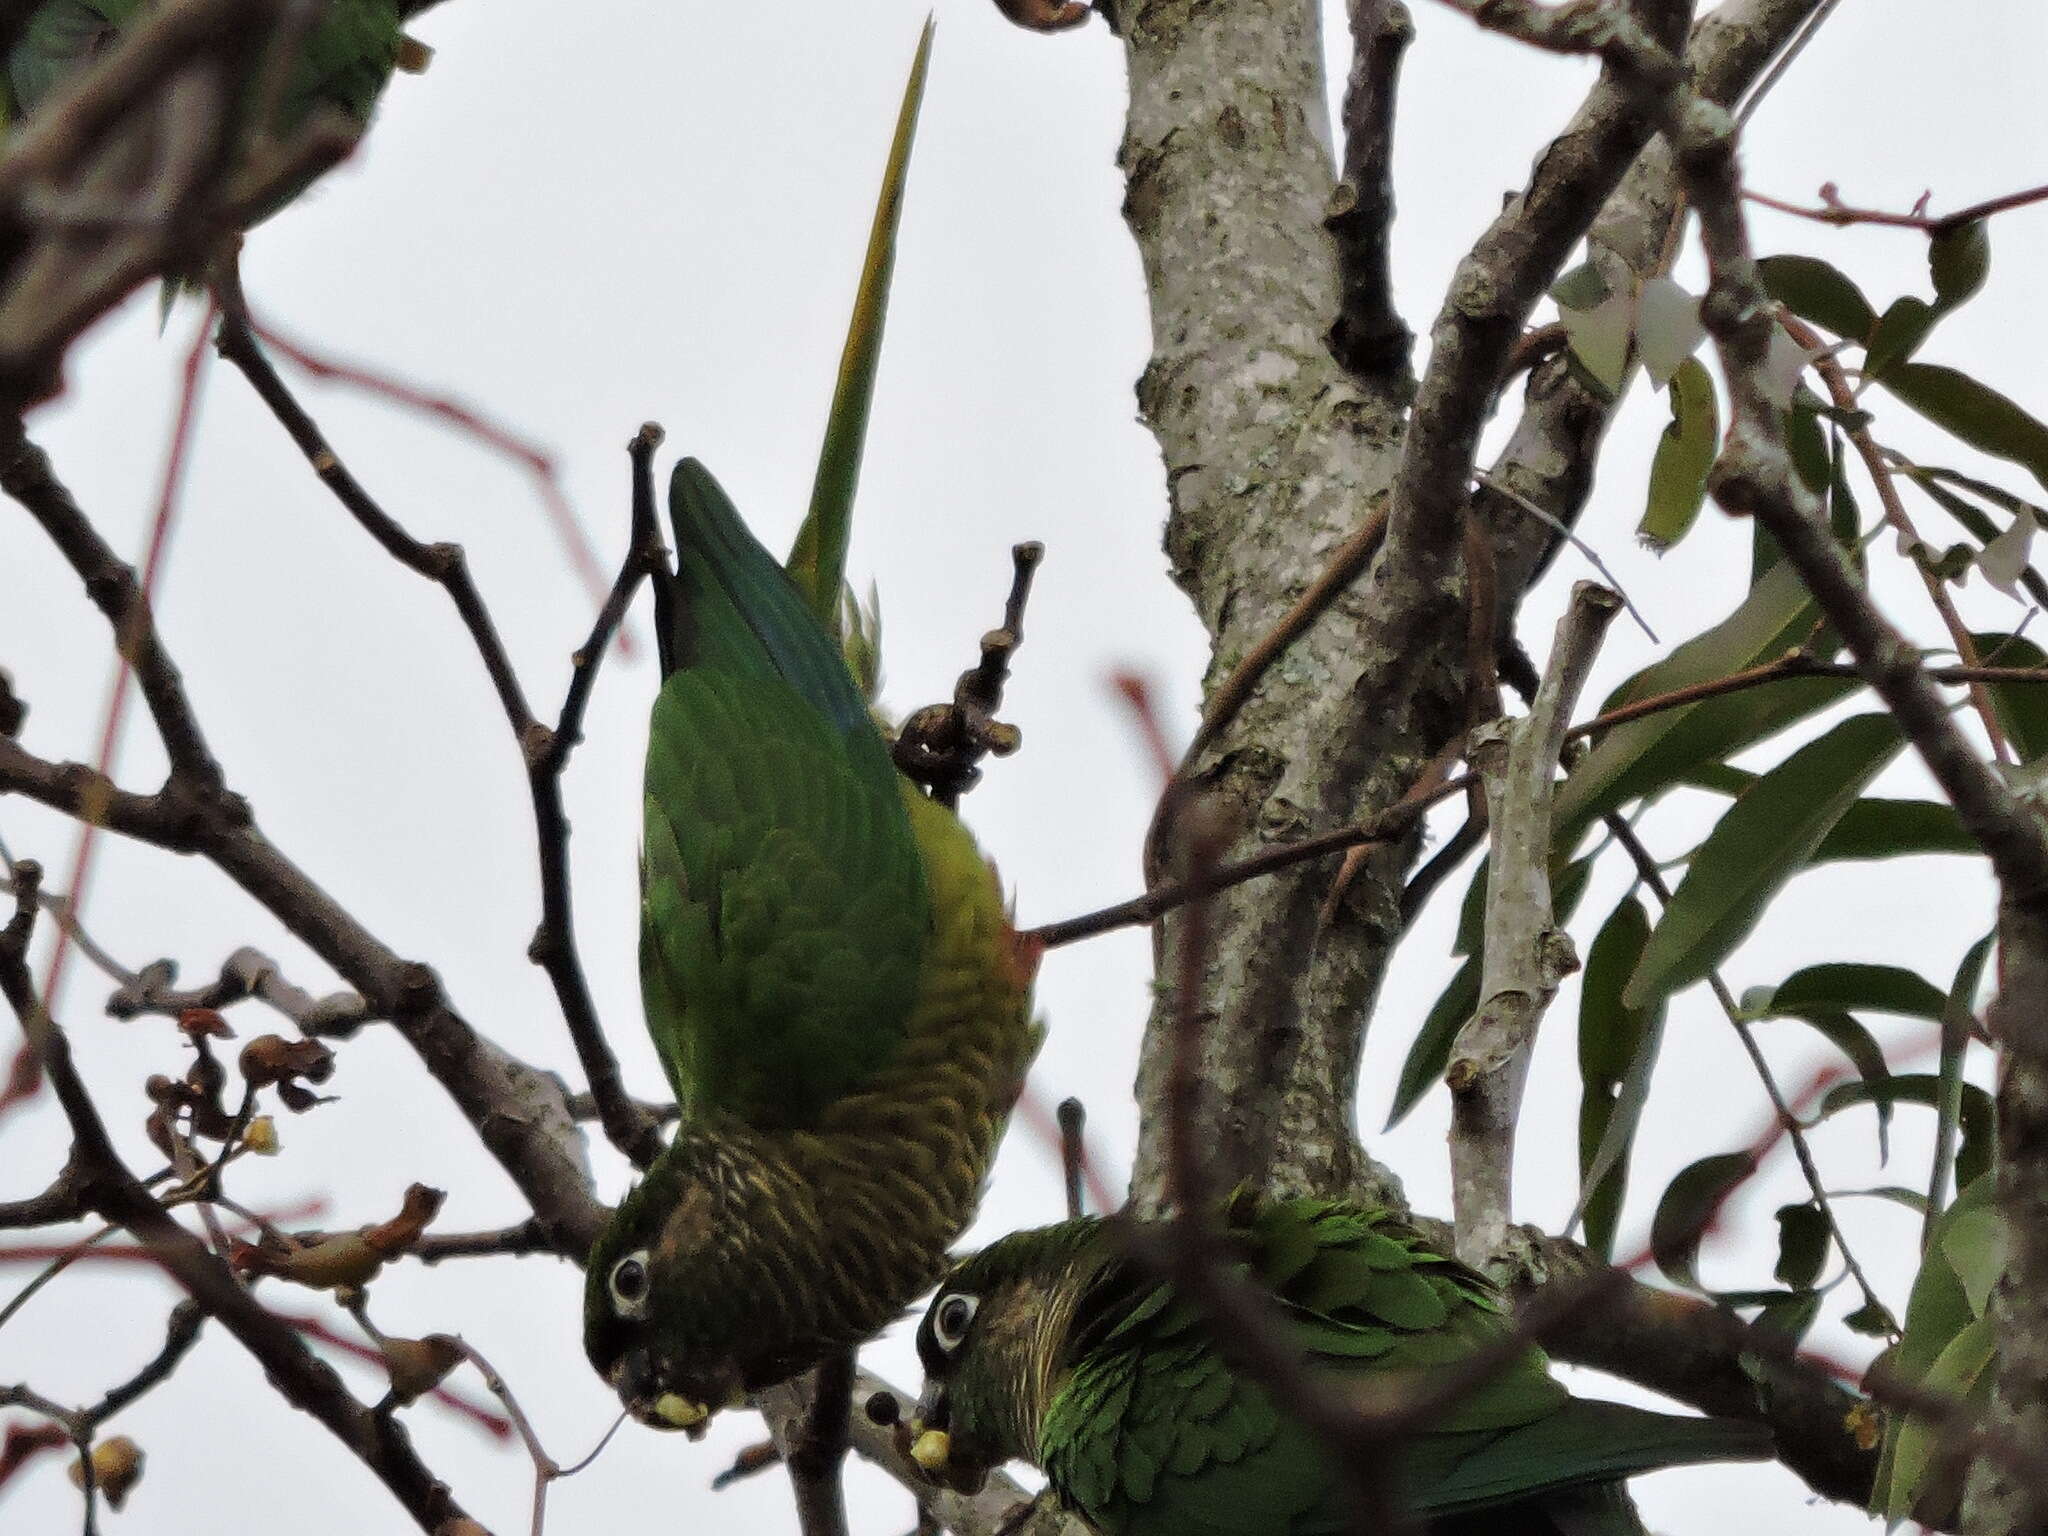 Image of Maroon-bellied Parakeet